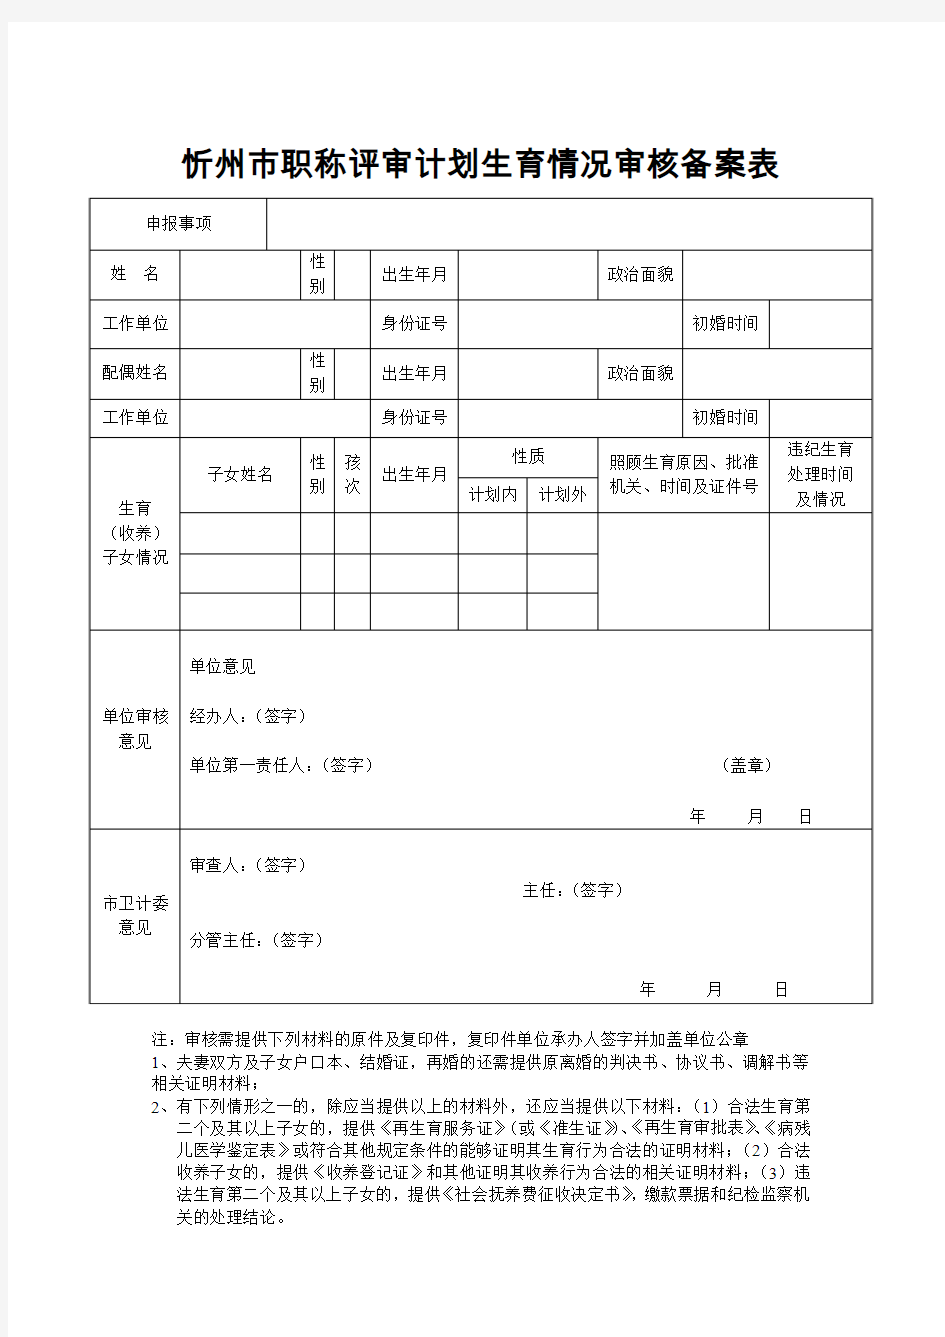 忻州市职称评审计划生育情况审核备案表.1doc